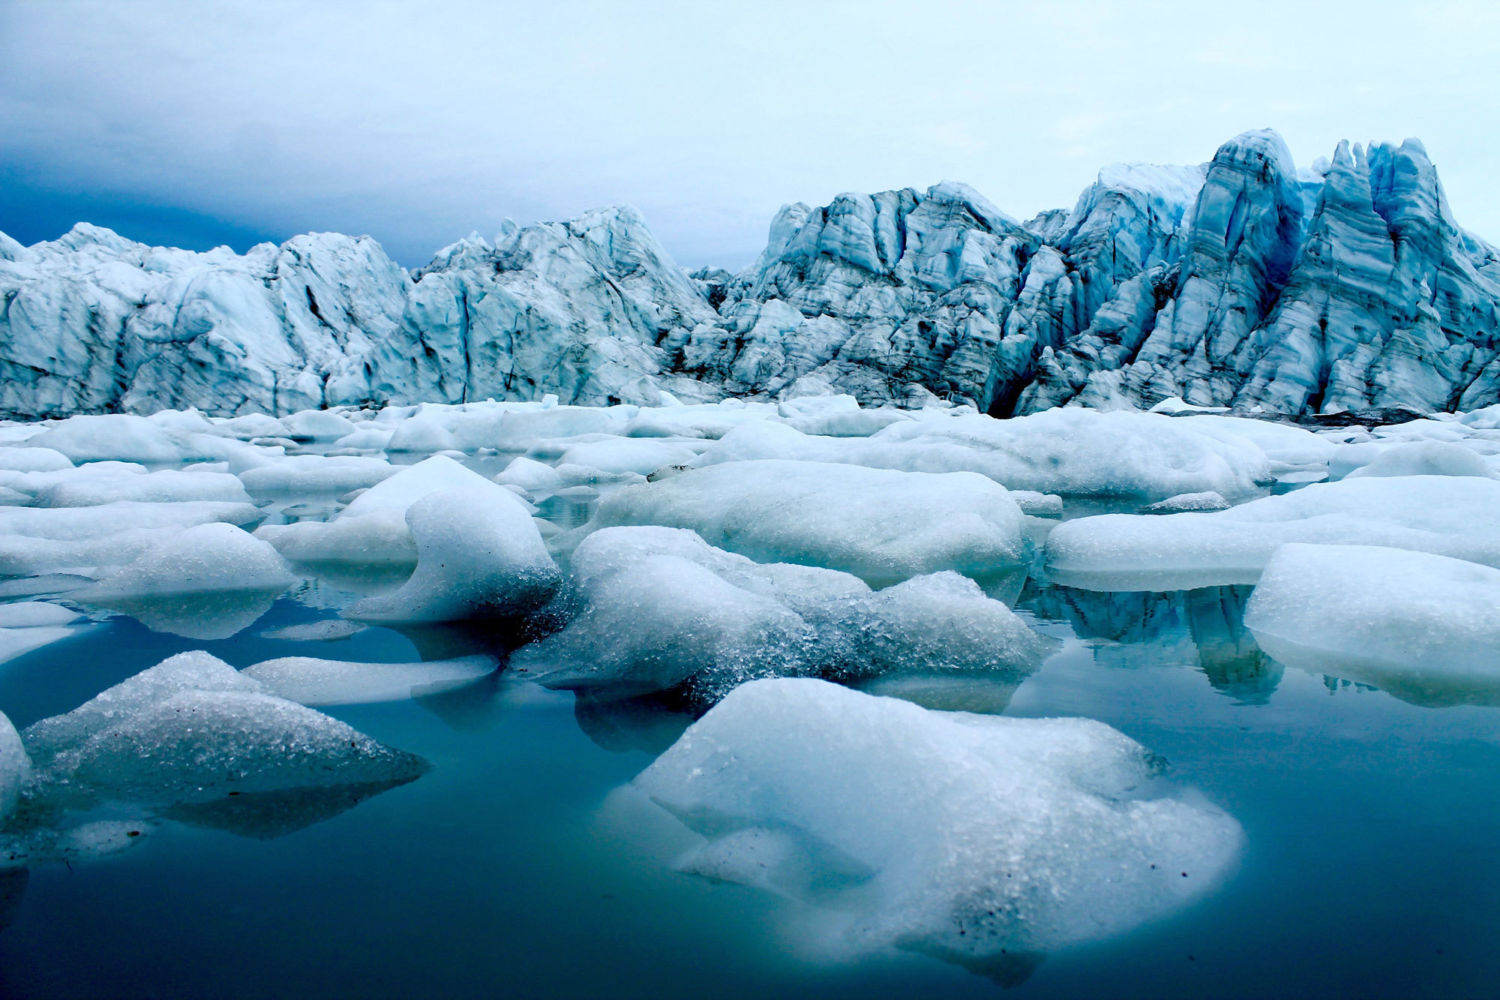 Hatszorosára gyorsult a jégolvadás Grönlandon és az Antarktiszon az 1990-es évekhez képest a globális felmelegedés hatására.